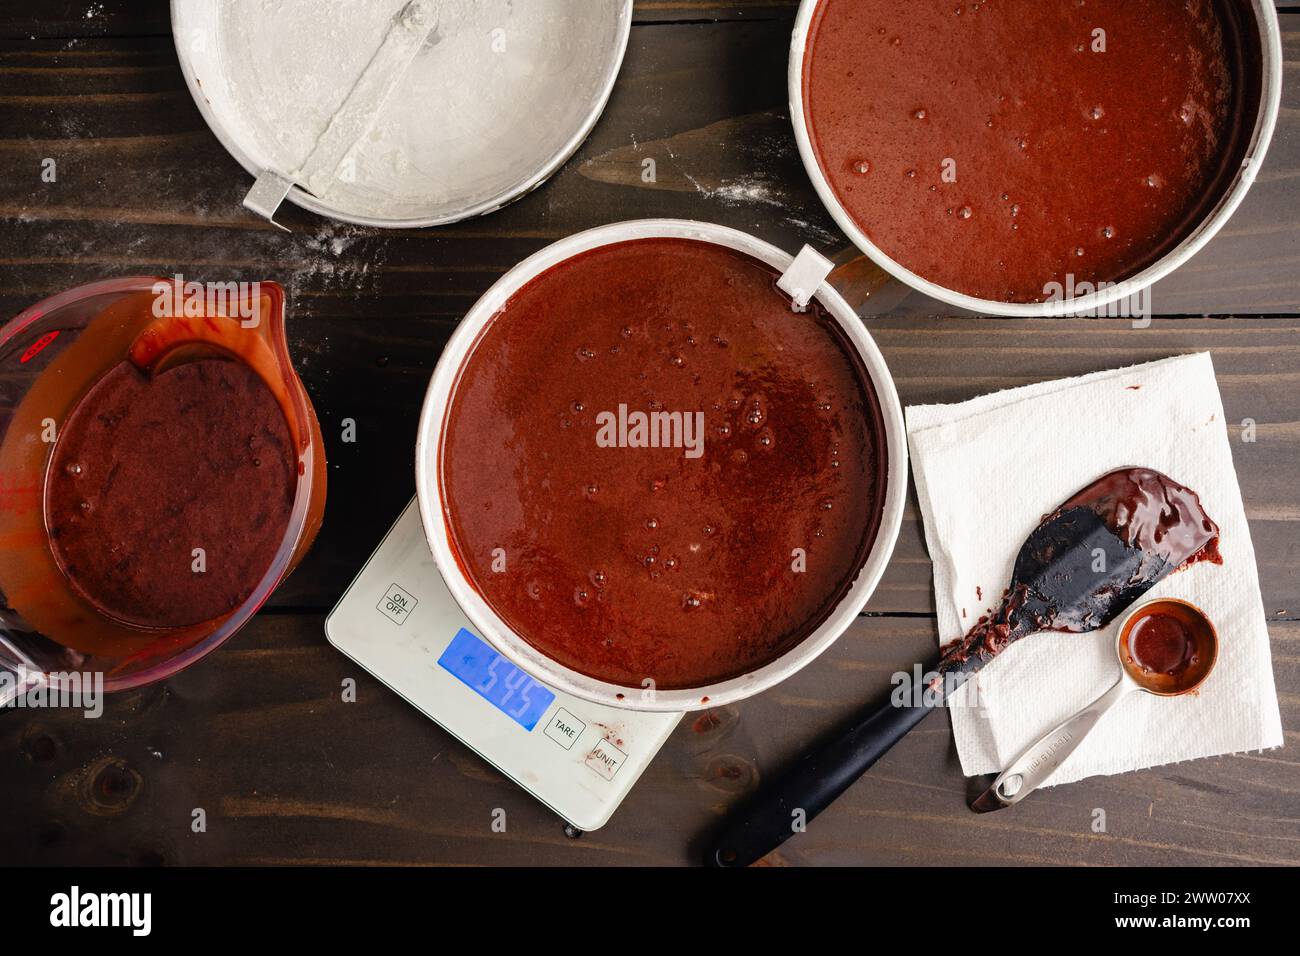 Wiegekuchenpfannen gefüllt mit Schokoladenteig: Runde bemehlte Kuchenpfannen, die mit einer digitalen Küchenwaage gewogen werden, um eine gleichmäßige Verteilung und Größe zu gewährleisten Stockfoto